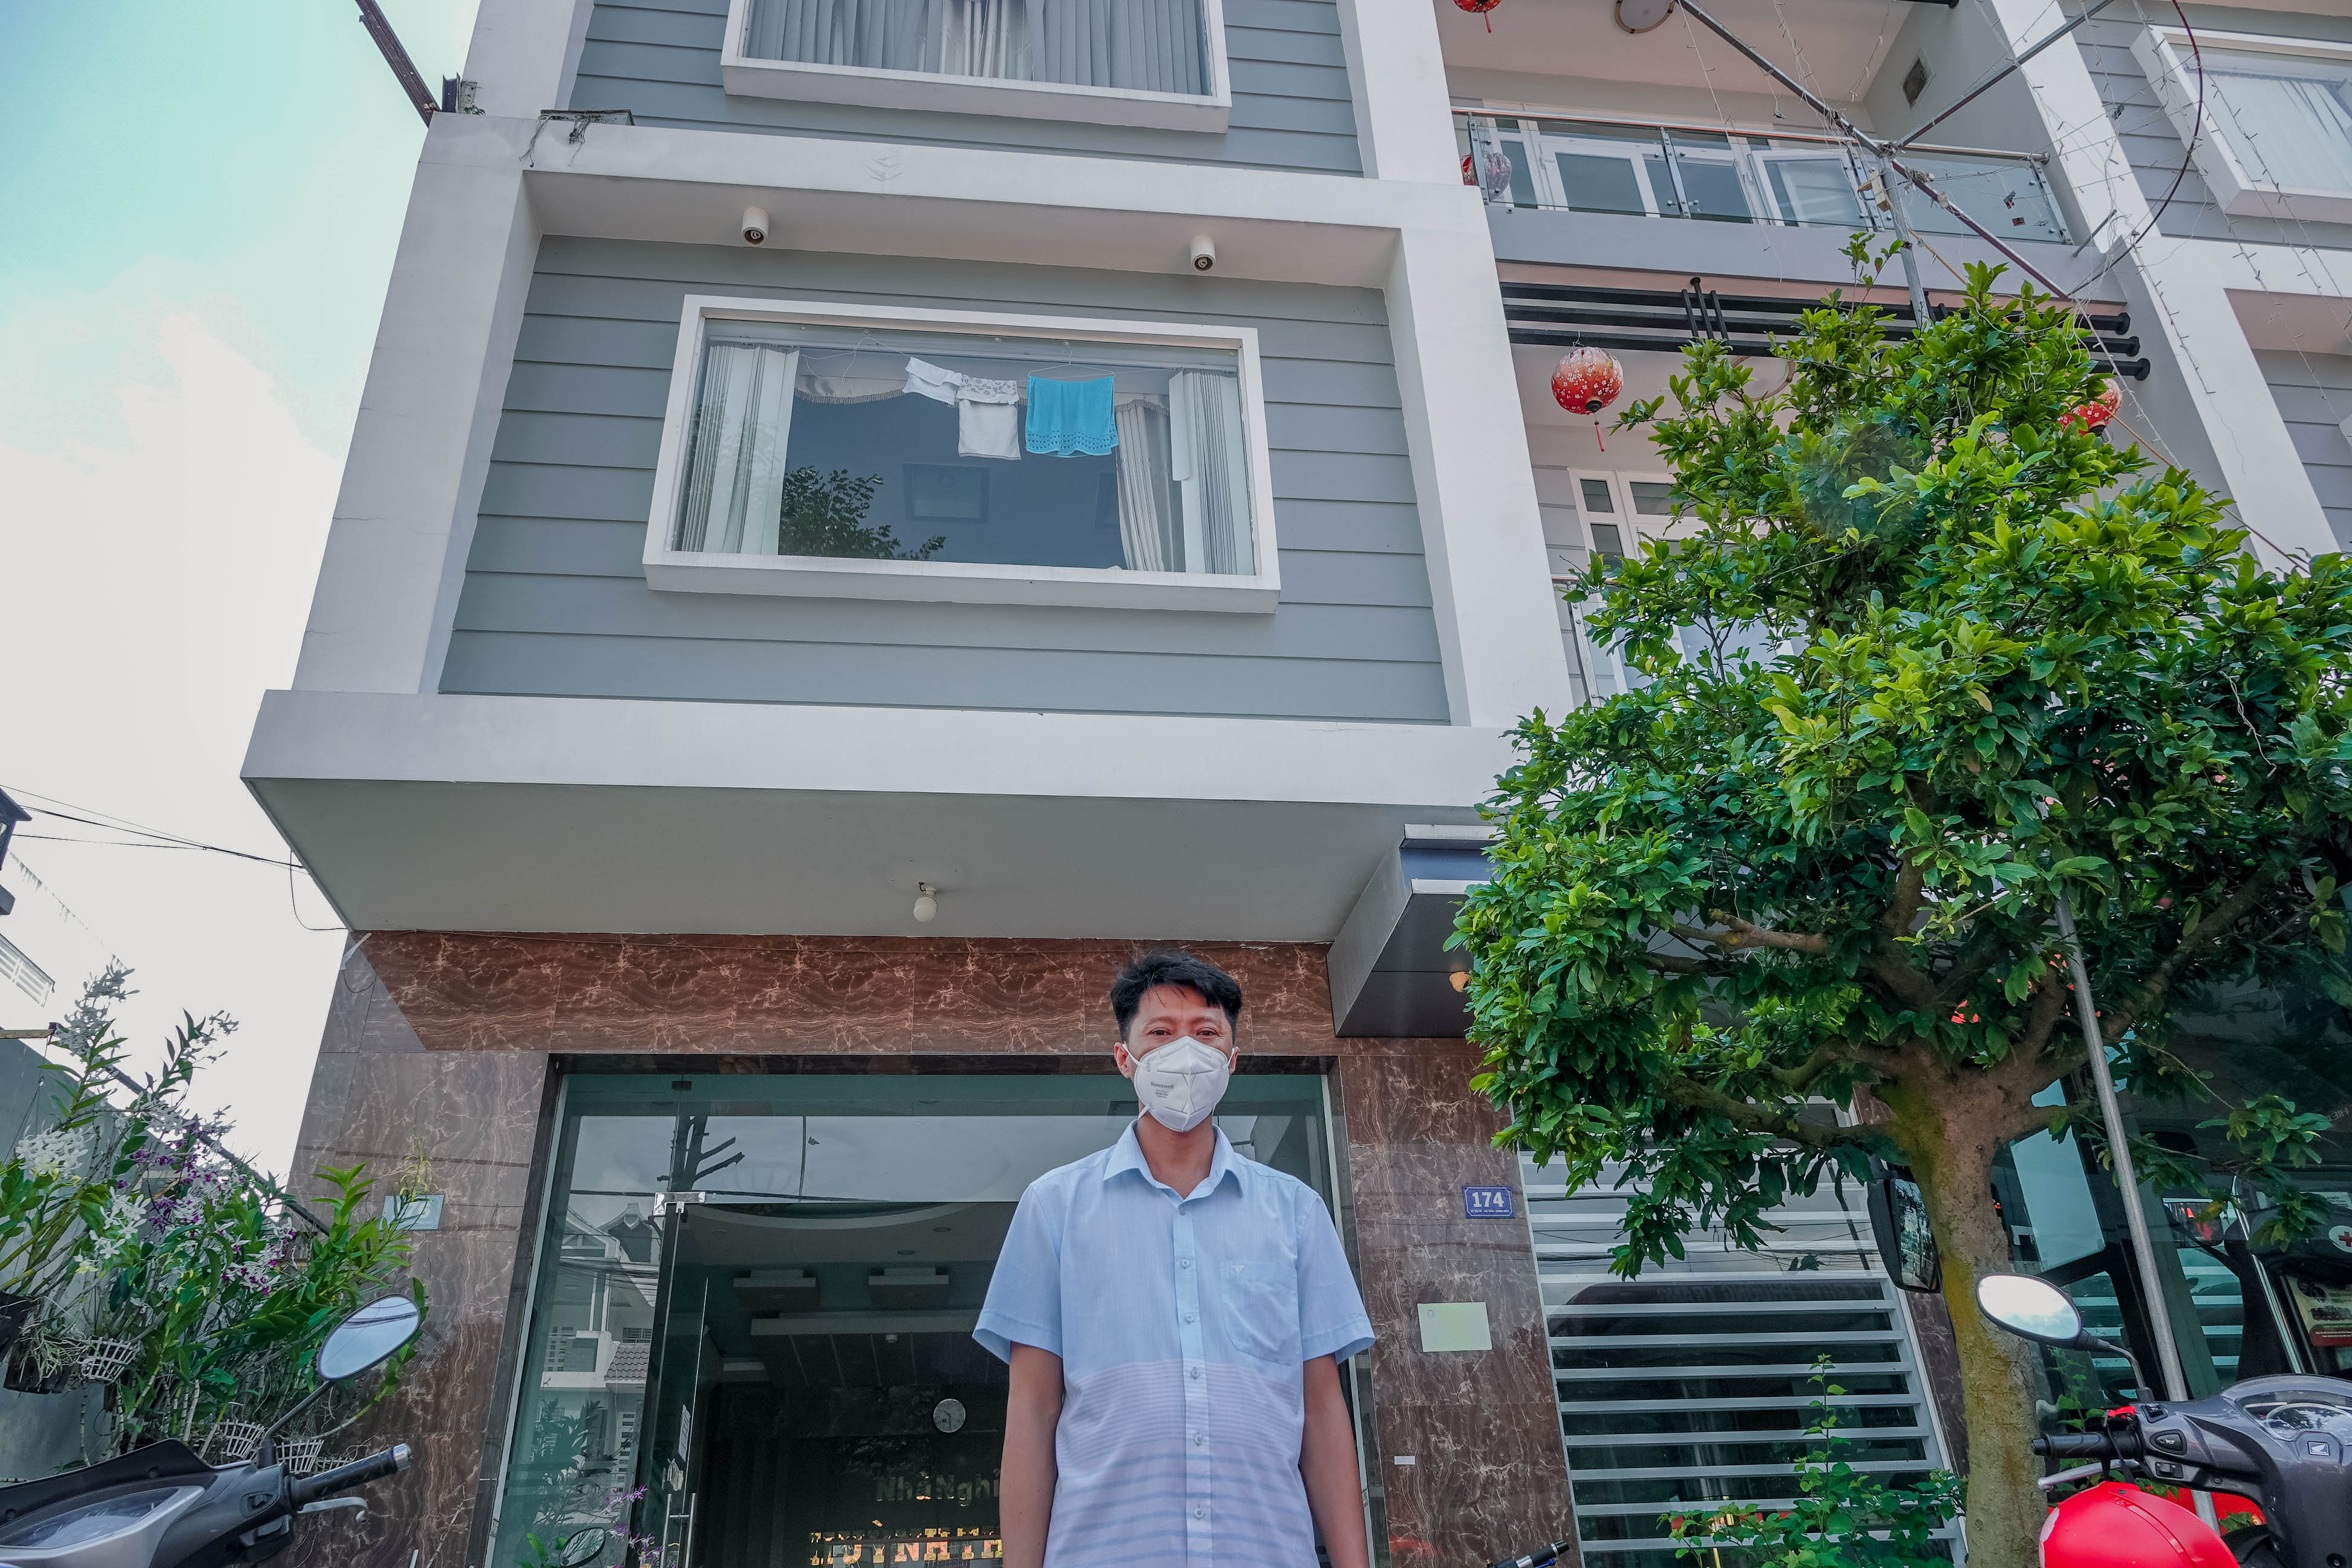 Với những biện pháp phòng chống dịch Covid-19, các nhà nghỉ Sài Gòn sẽ mang đến cho bạn sự an tâm và yên tâm khi lưu trú tại đây. Các nhà nghỉ đã thực hiện nhiều hành động để chống lại đại dịch lớn và phát triển không ngừng với các biện pháp cần thiết để mang lại cho du khách một trải nghiệm an toàn và tốt nhất.